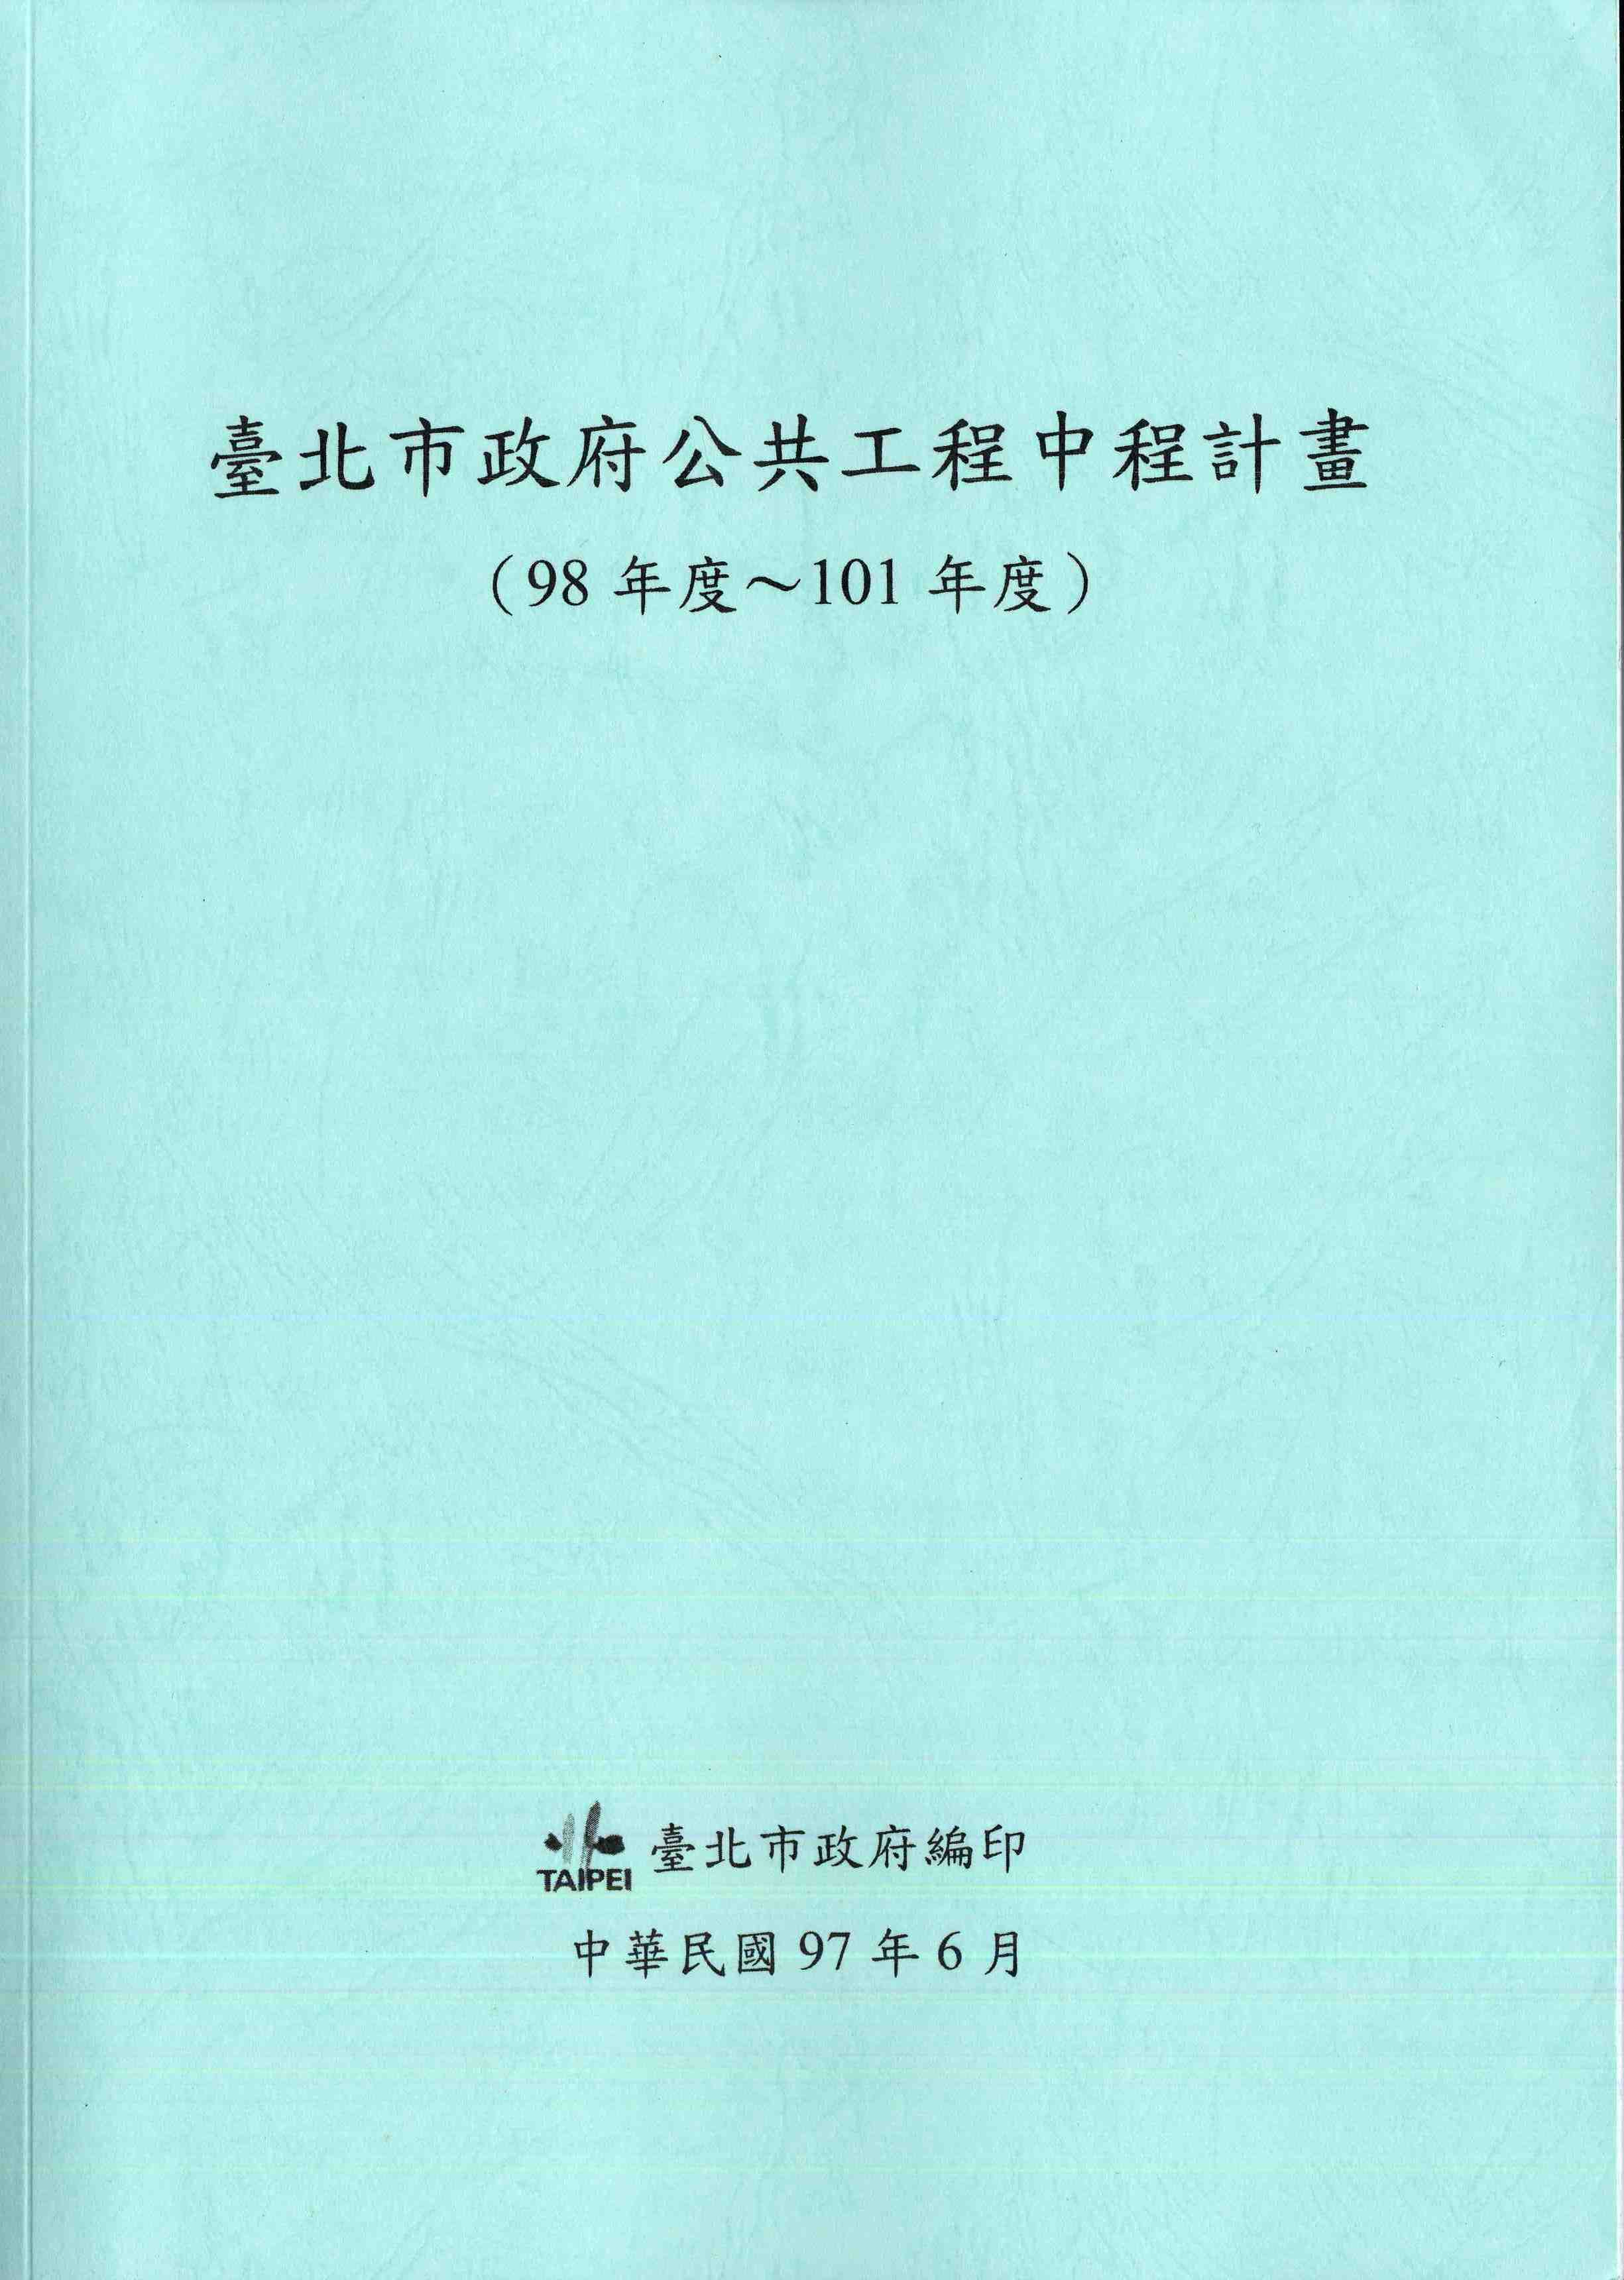 臺北市政府公共工程中程計畫(98年度-101年度)